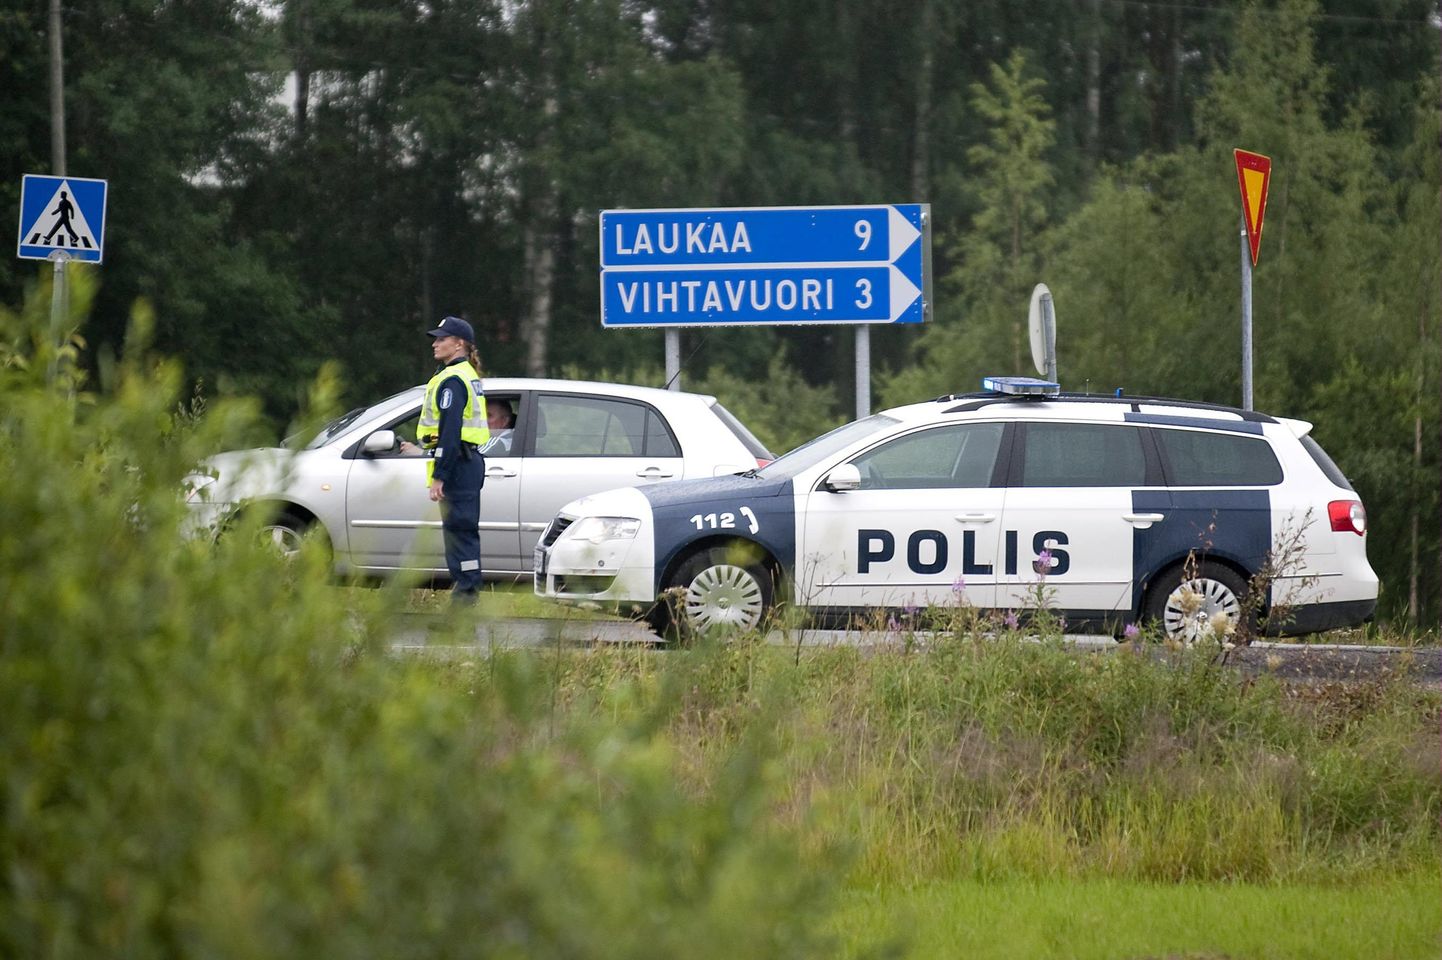 Soomes kutsuti kuuse otsa roninud ja laulma hakanud vanaemale politsei